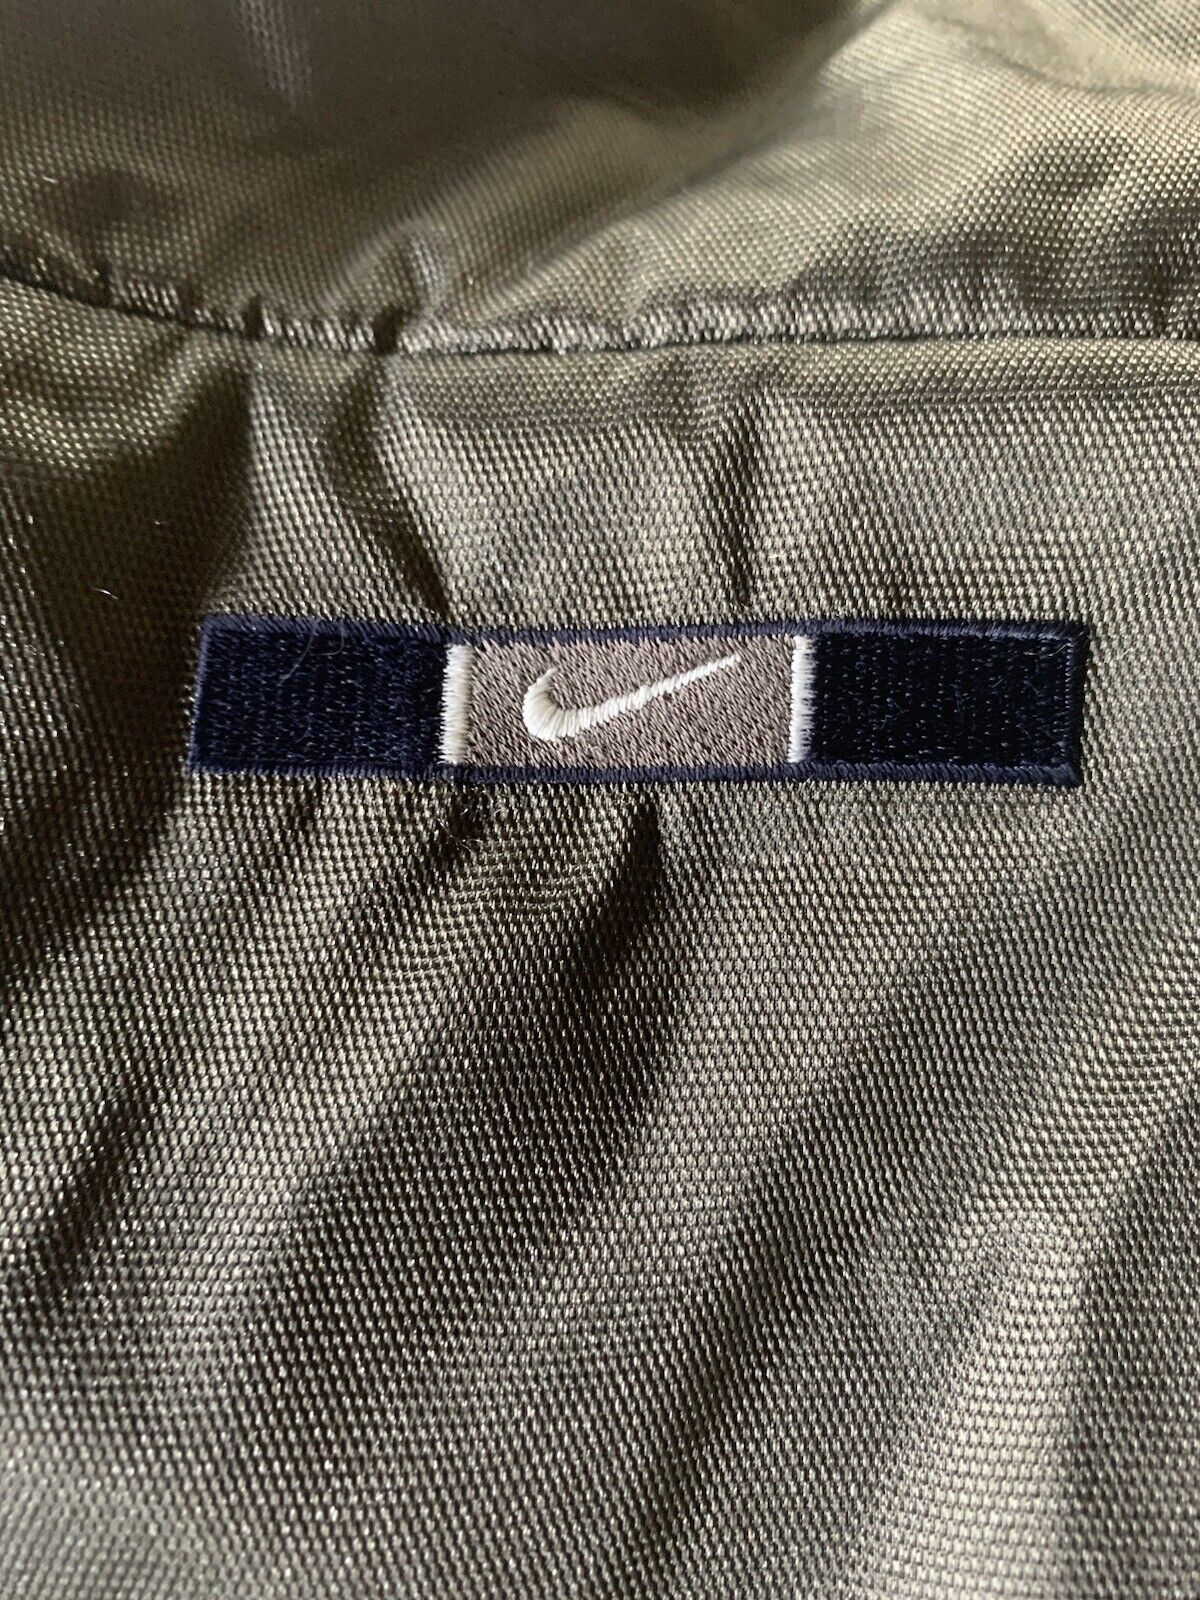 Men’s Vintage Nike Waterproof Jacket/Coat -Metall… - image 3